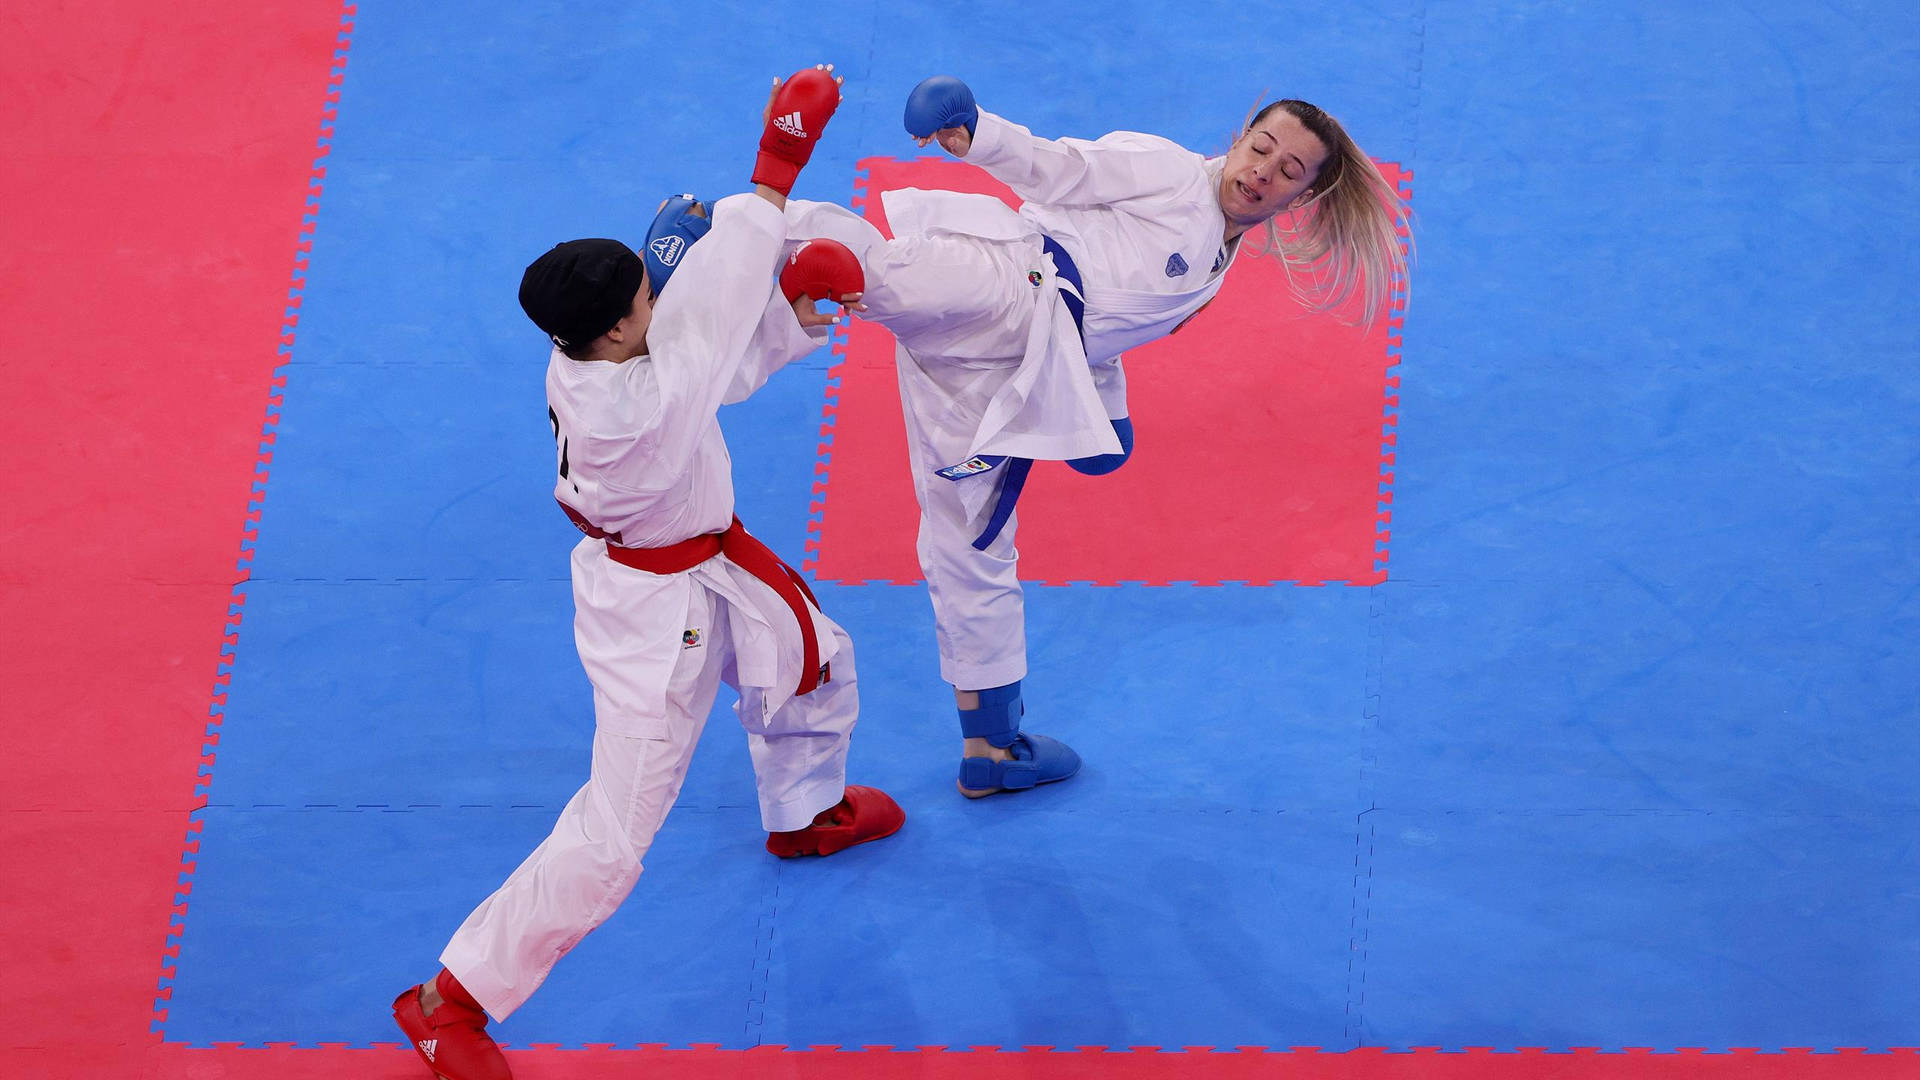 Wallpaper - Karate kick kamp på måtte tapet Wallpaper